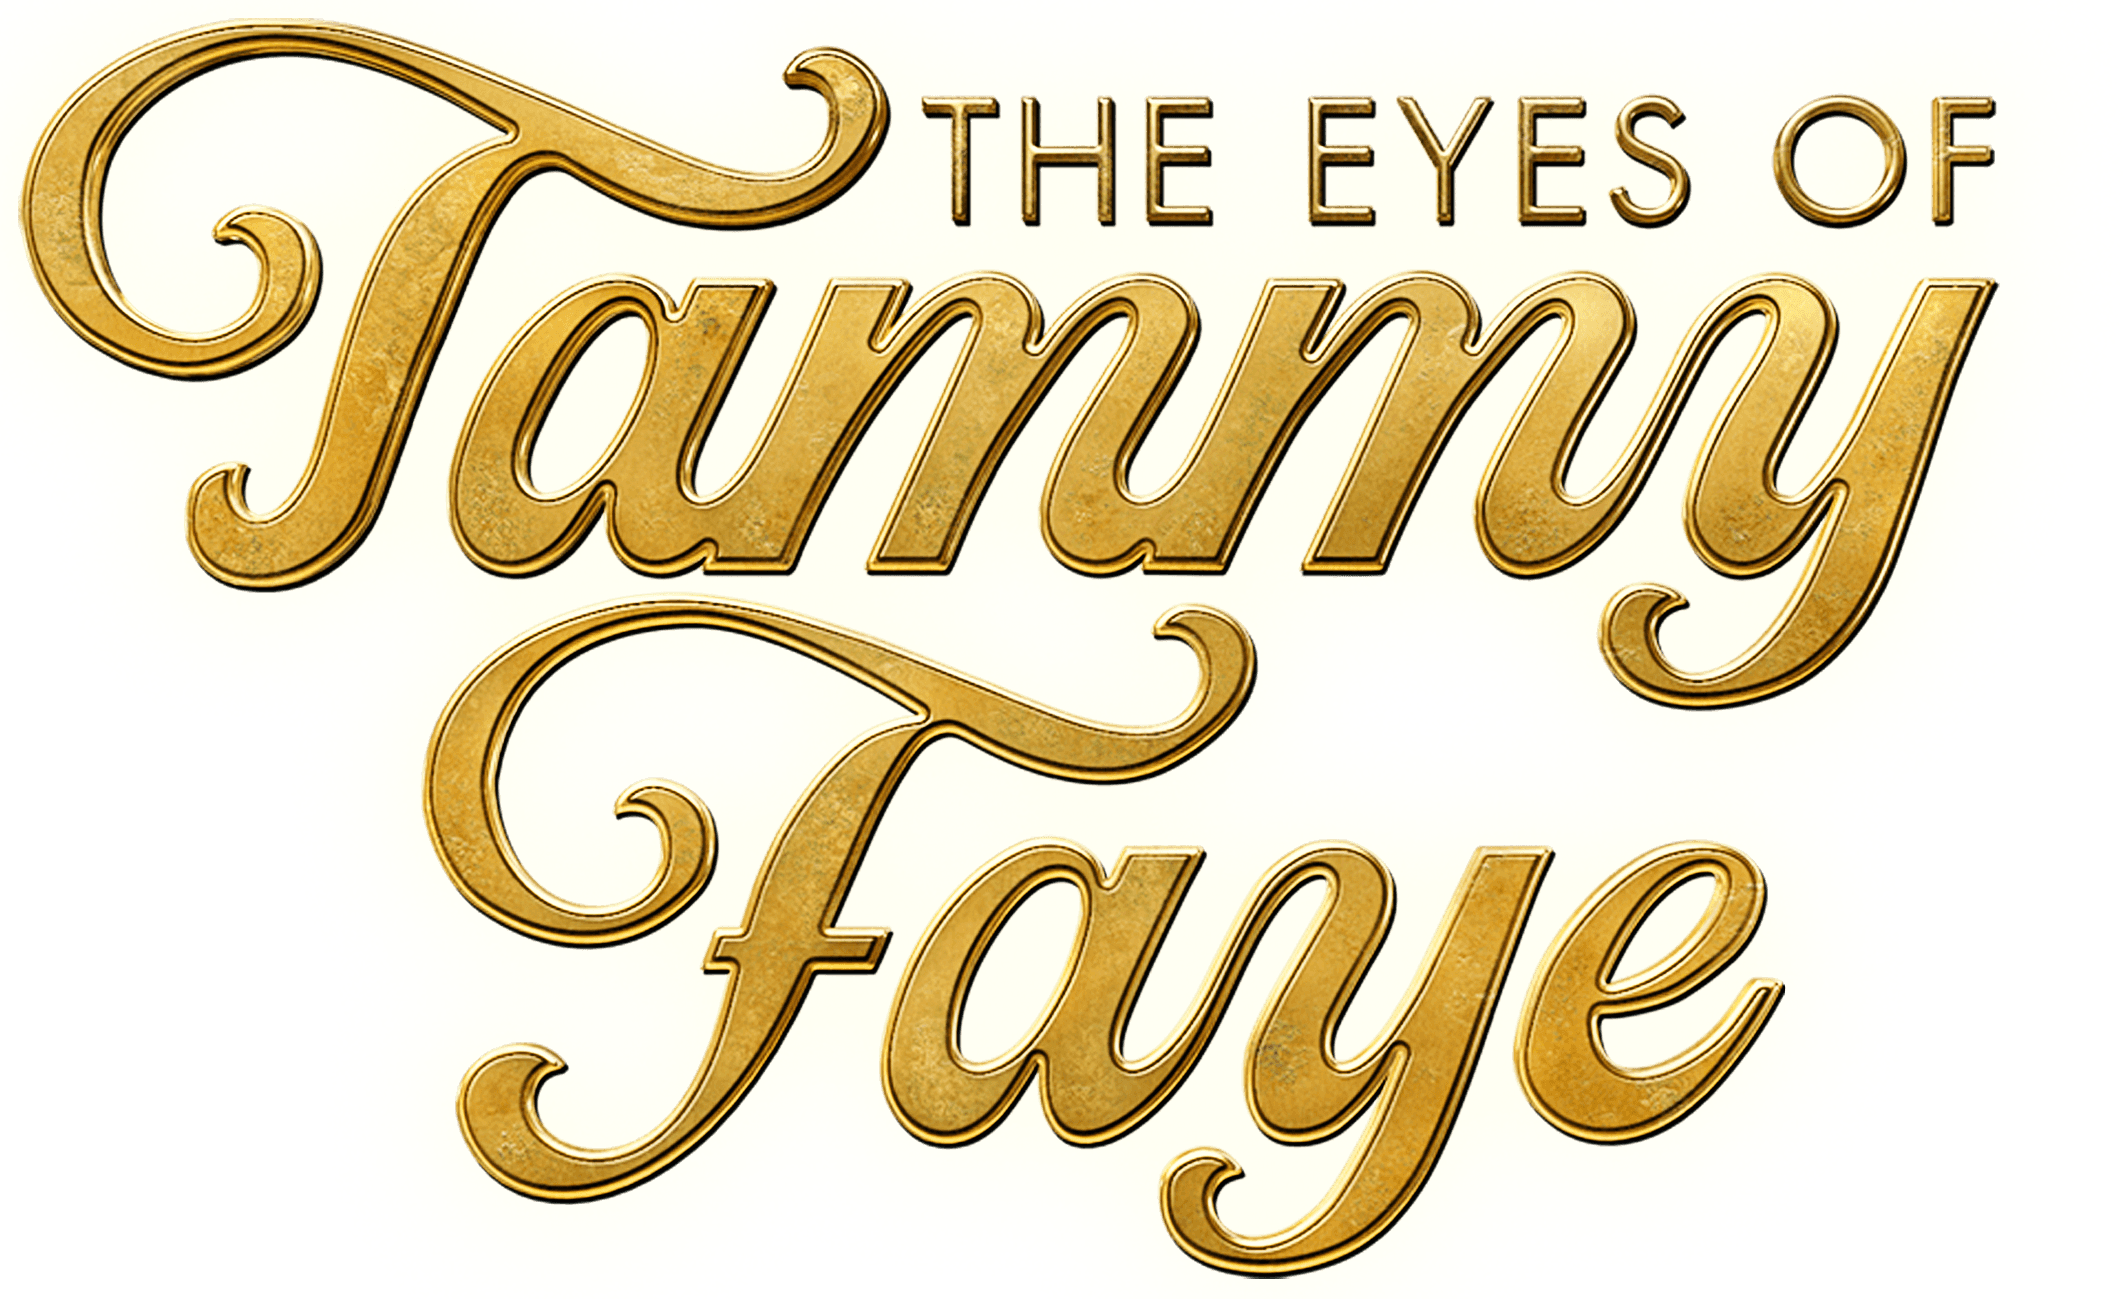 The Eyes of Tammy Faye logo